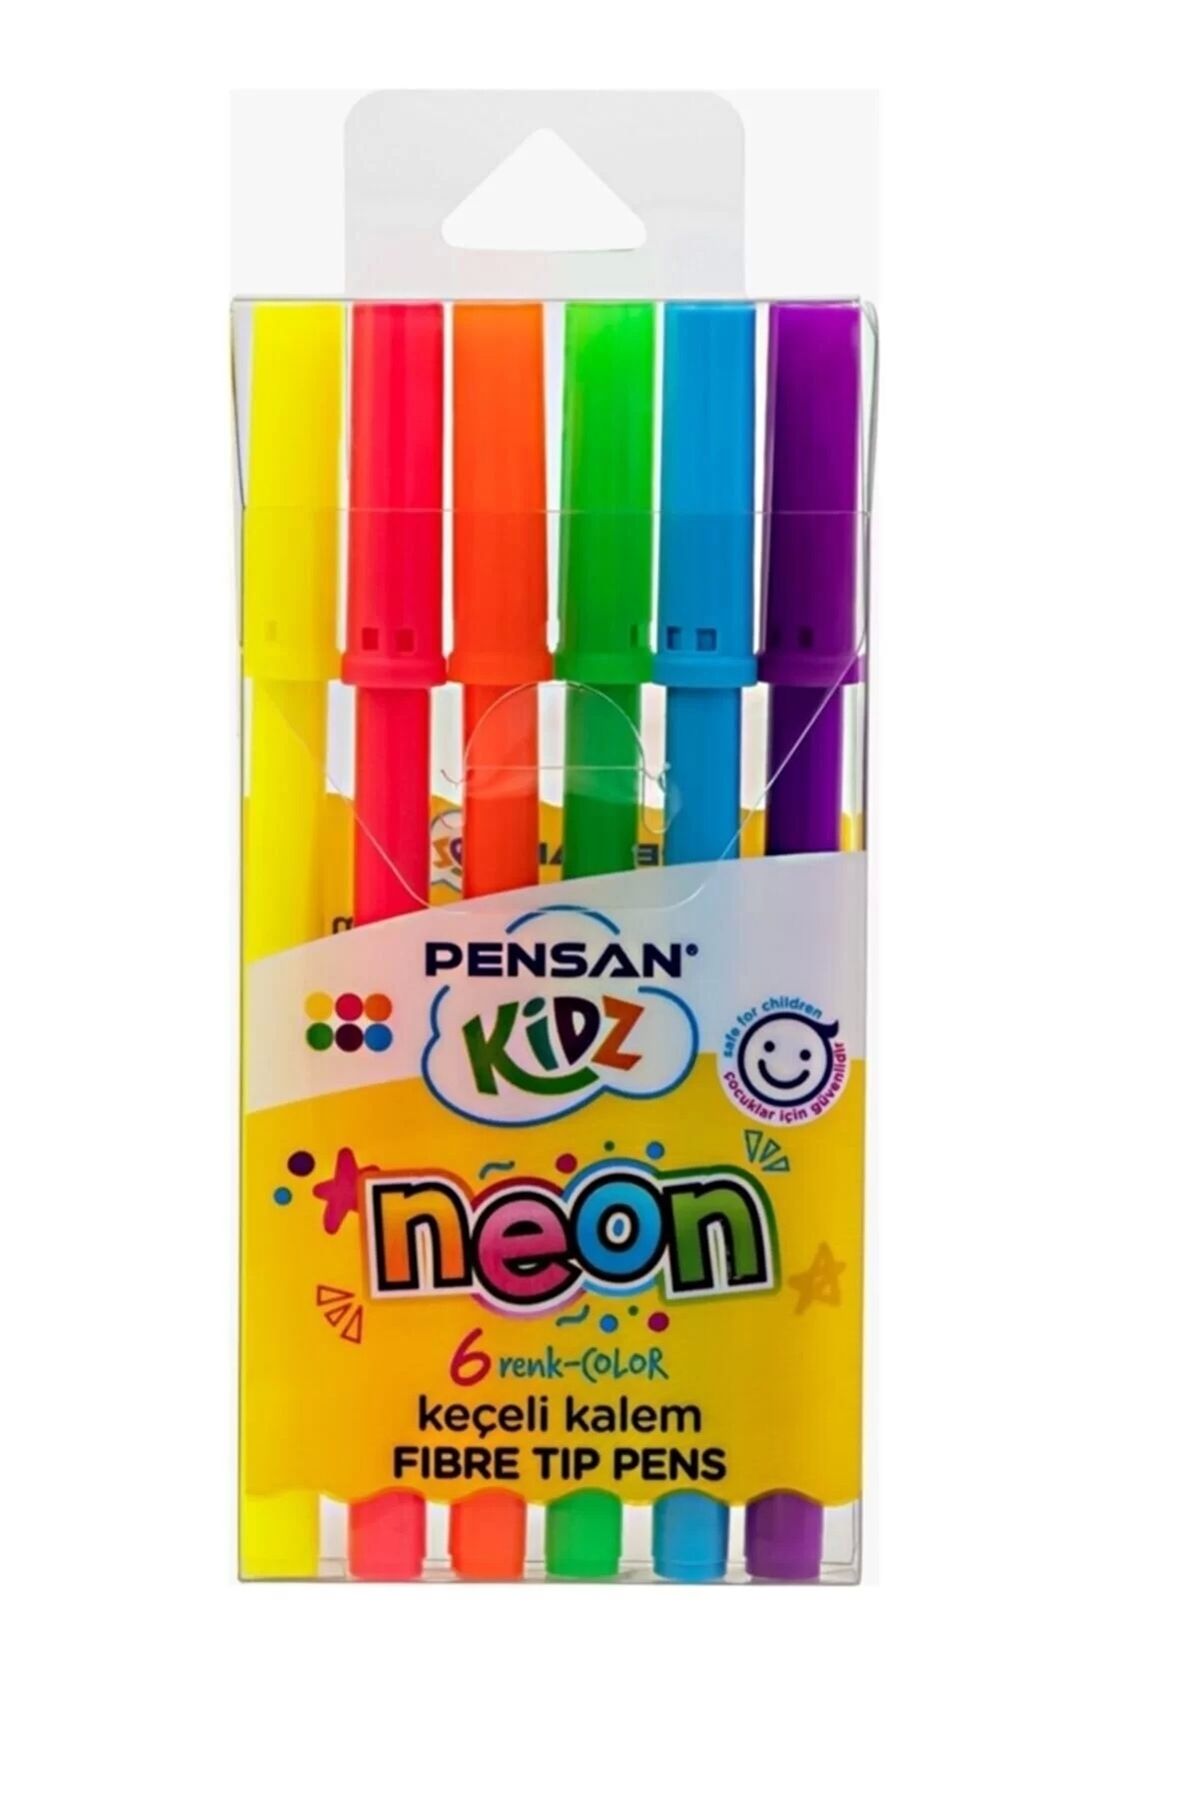 Pensan Kidz Neon Keçeli Kalem 6 Renk